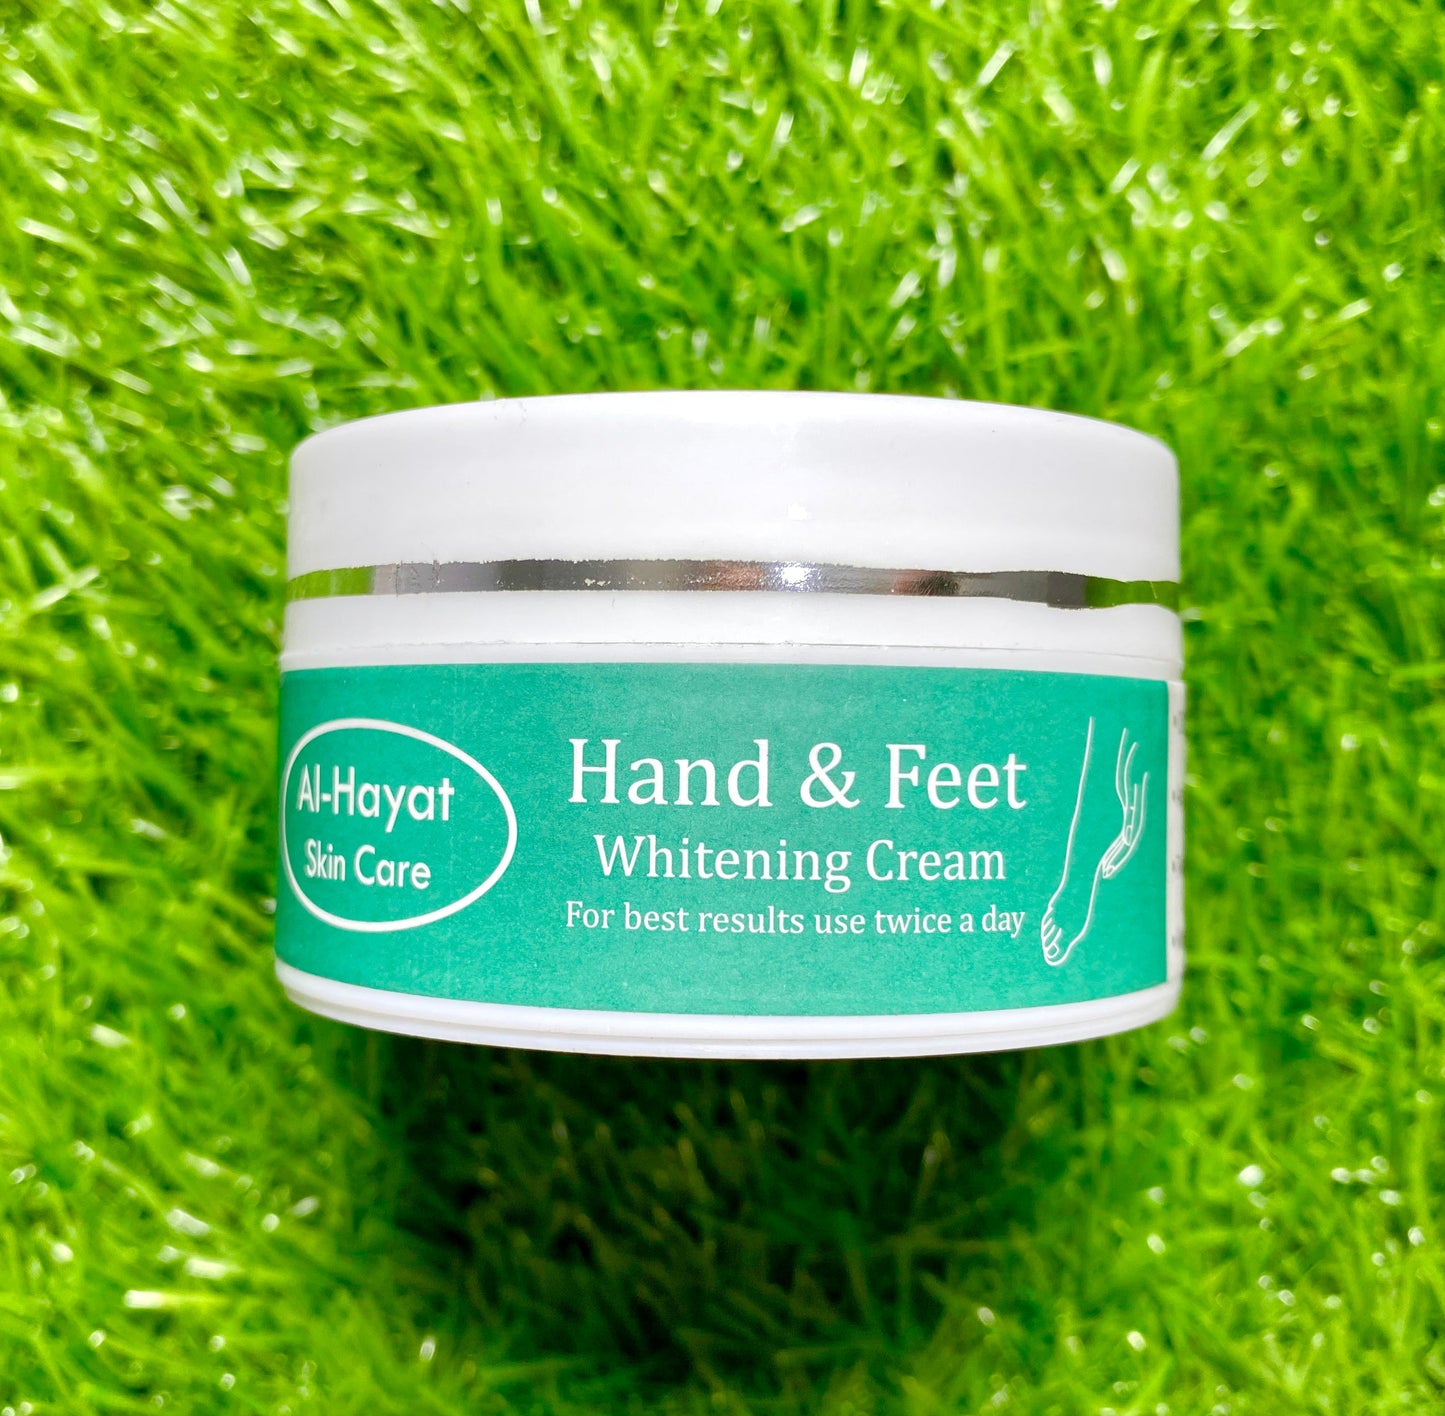 Hand and Feet Whitening Cream